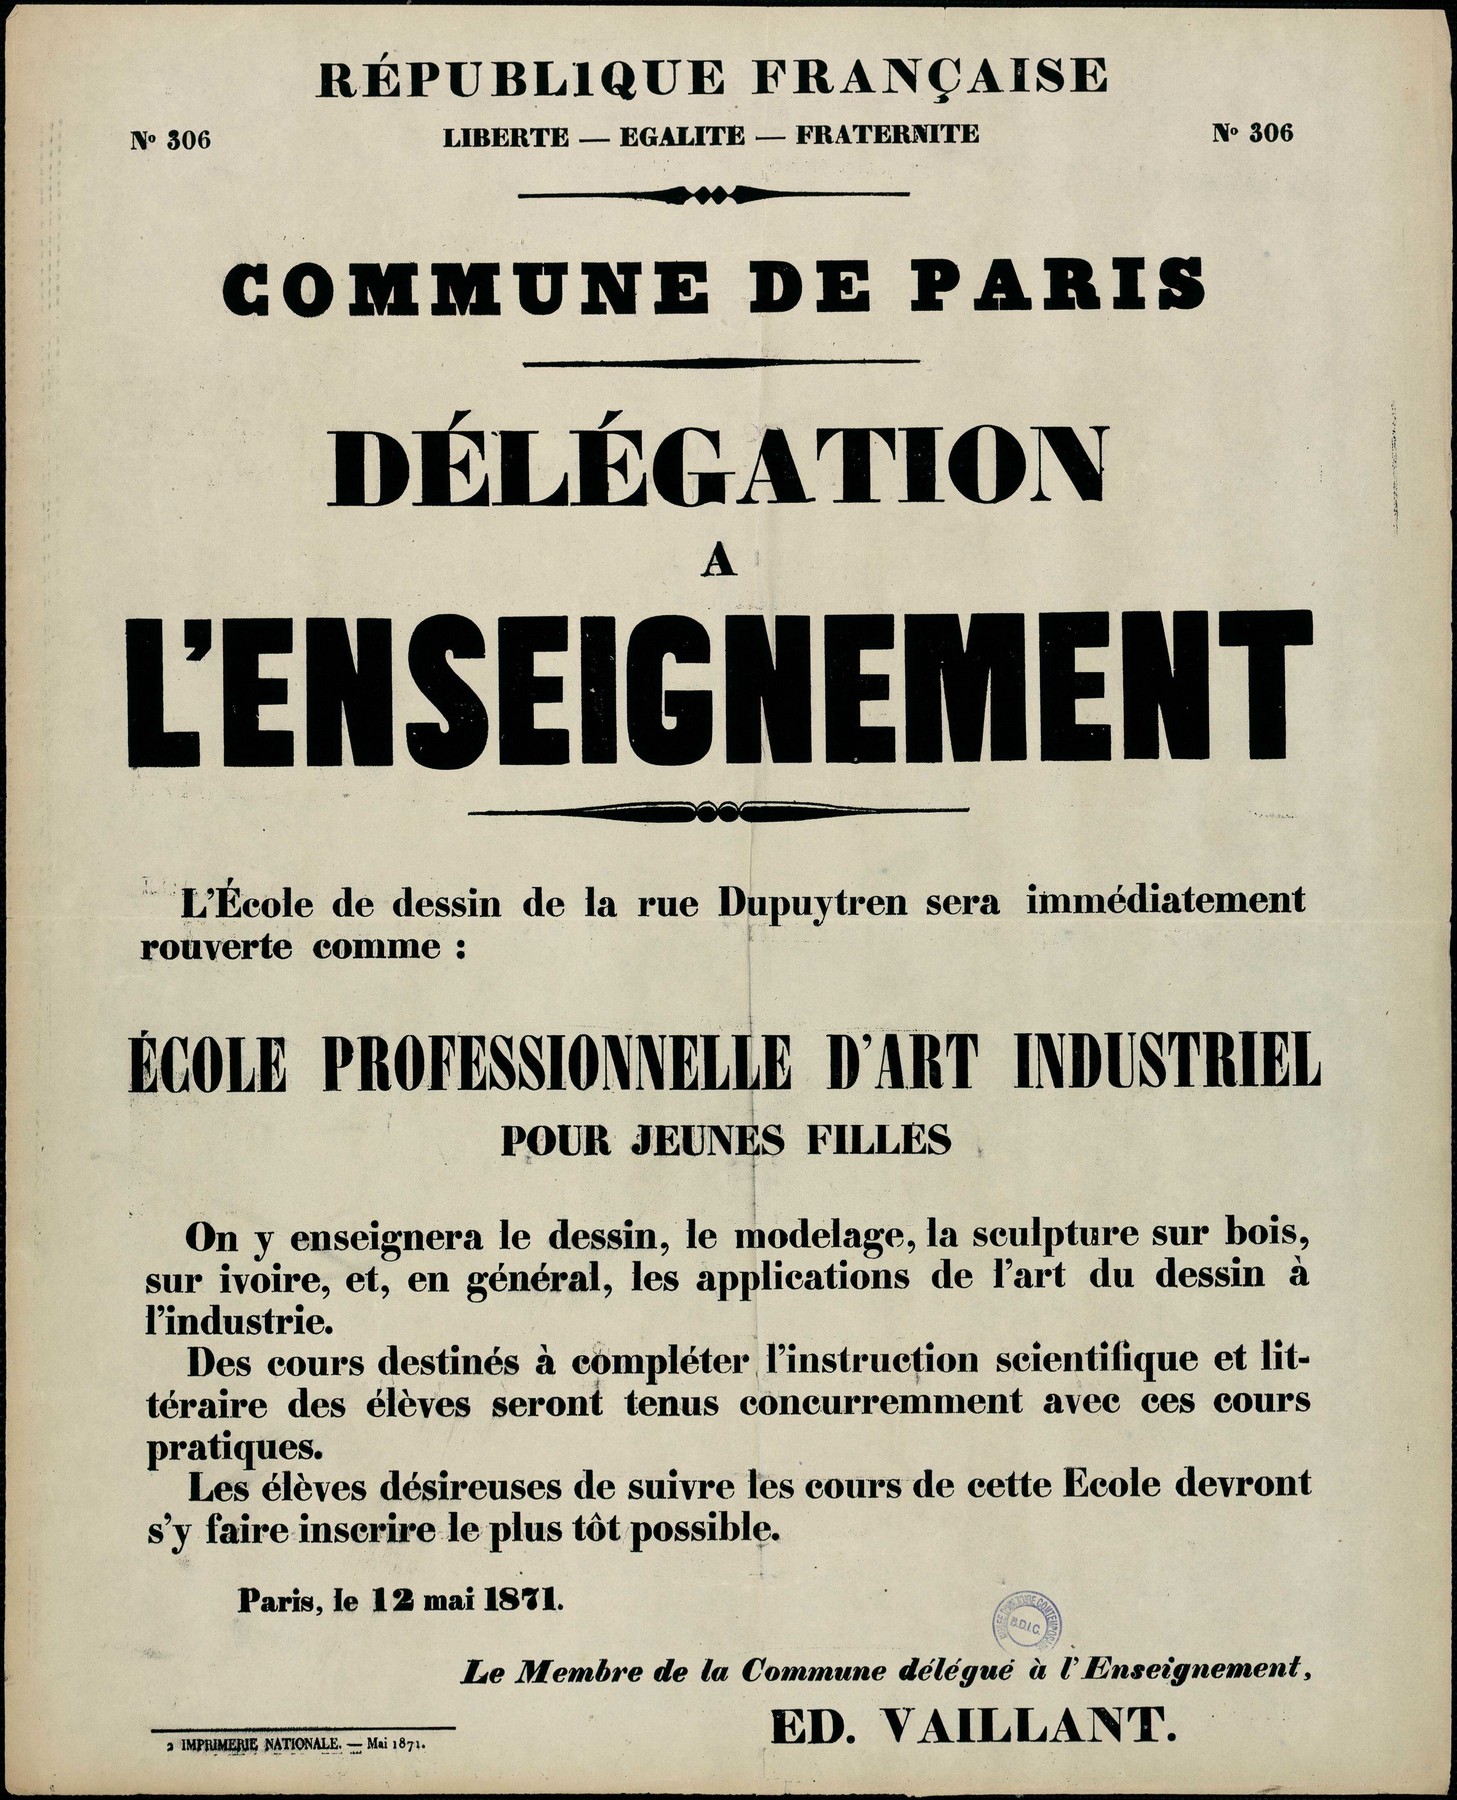 Affiche de la Commune de Paris concernant l'enseignement N° 306 du 12 mai 1871 - Ouverture d'une école professionnelle pour jeunes filles, signée Vaillant